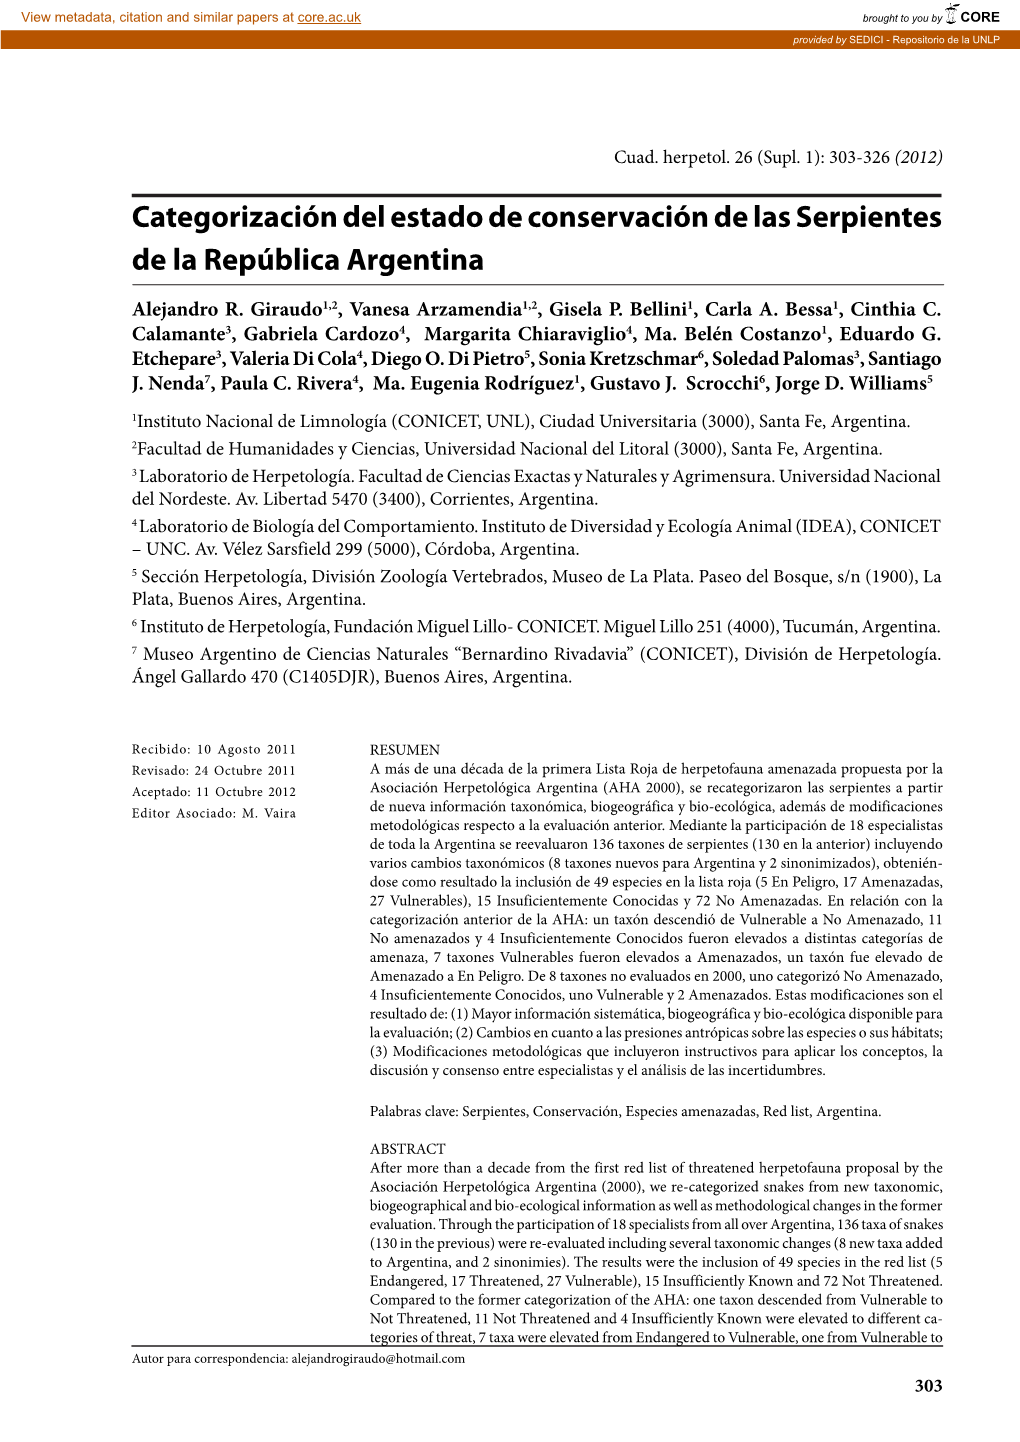 Categorización Del Estado De Conservación De Las Serpientes De La República Argentina